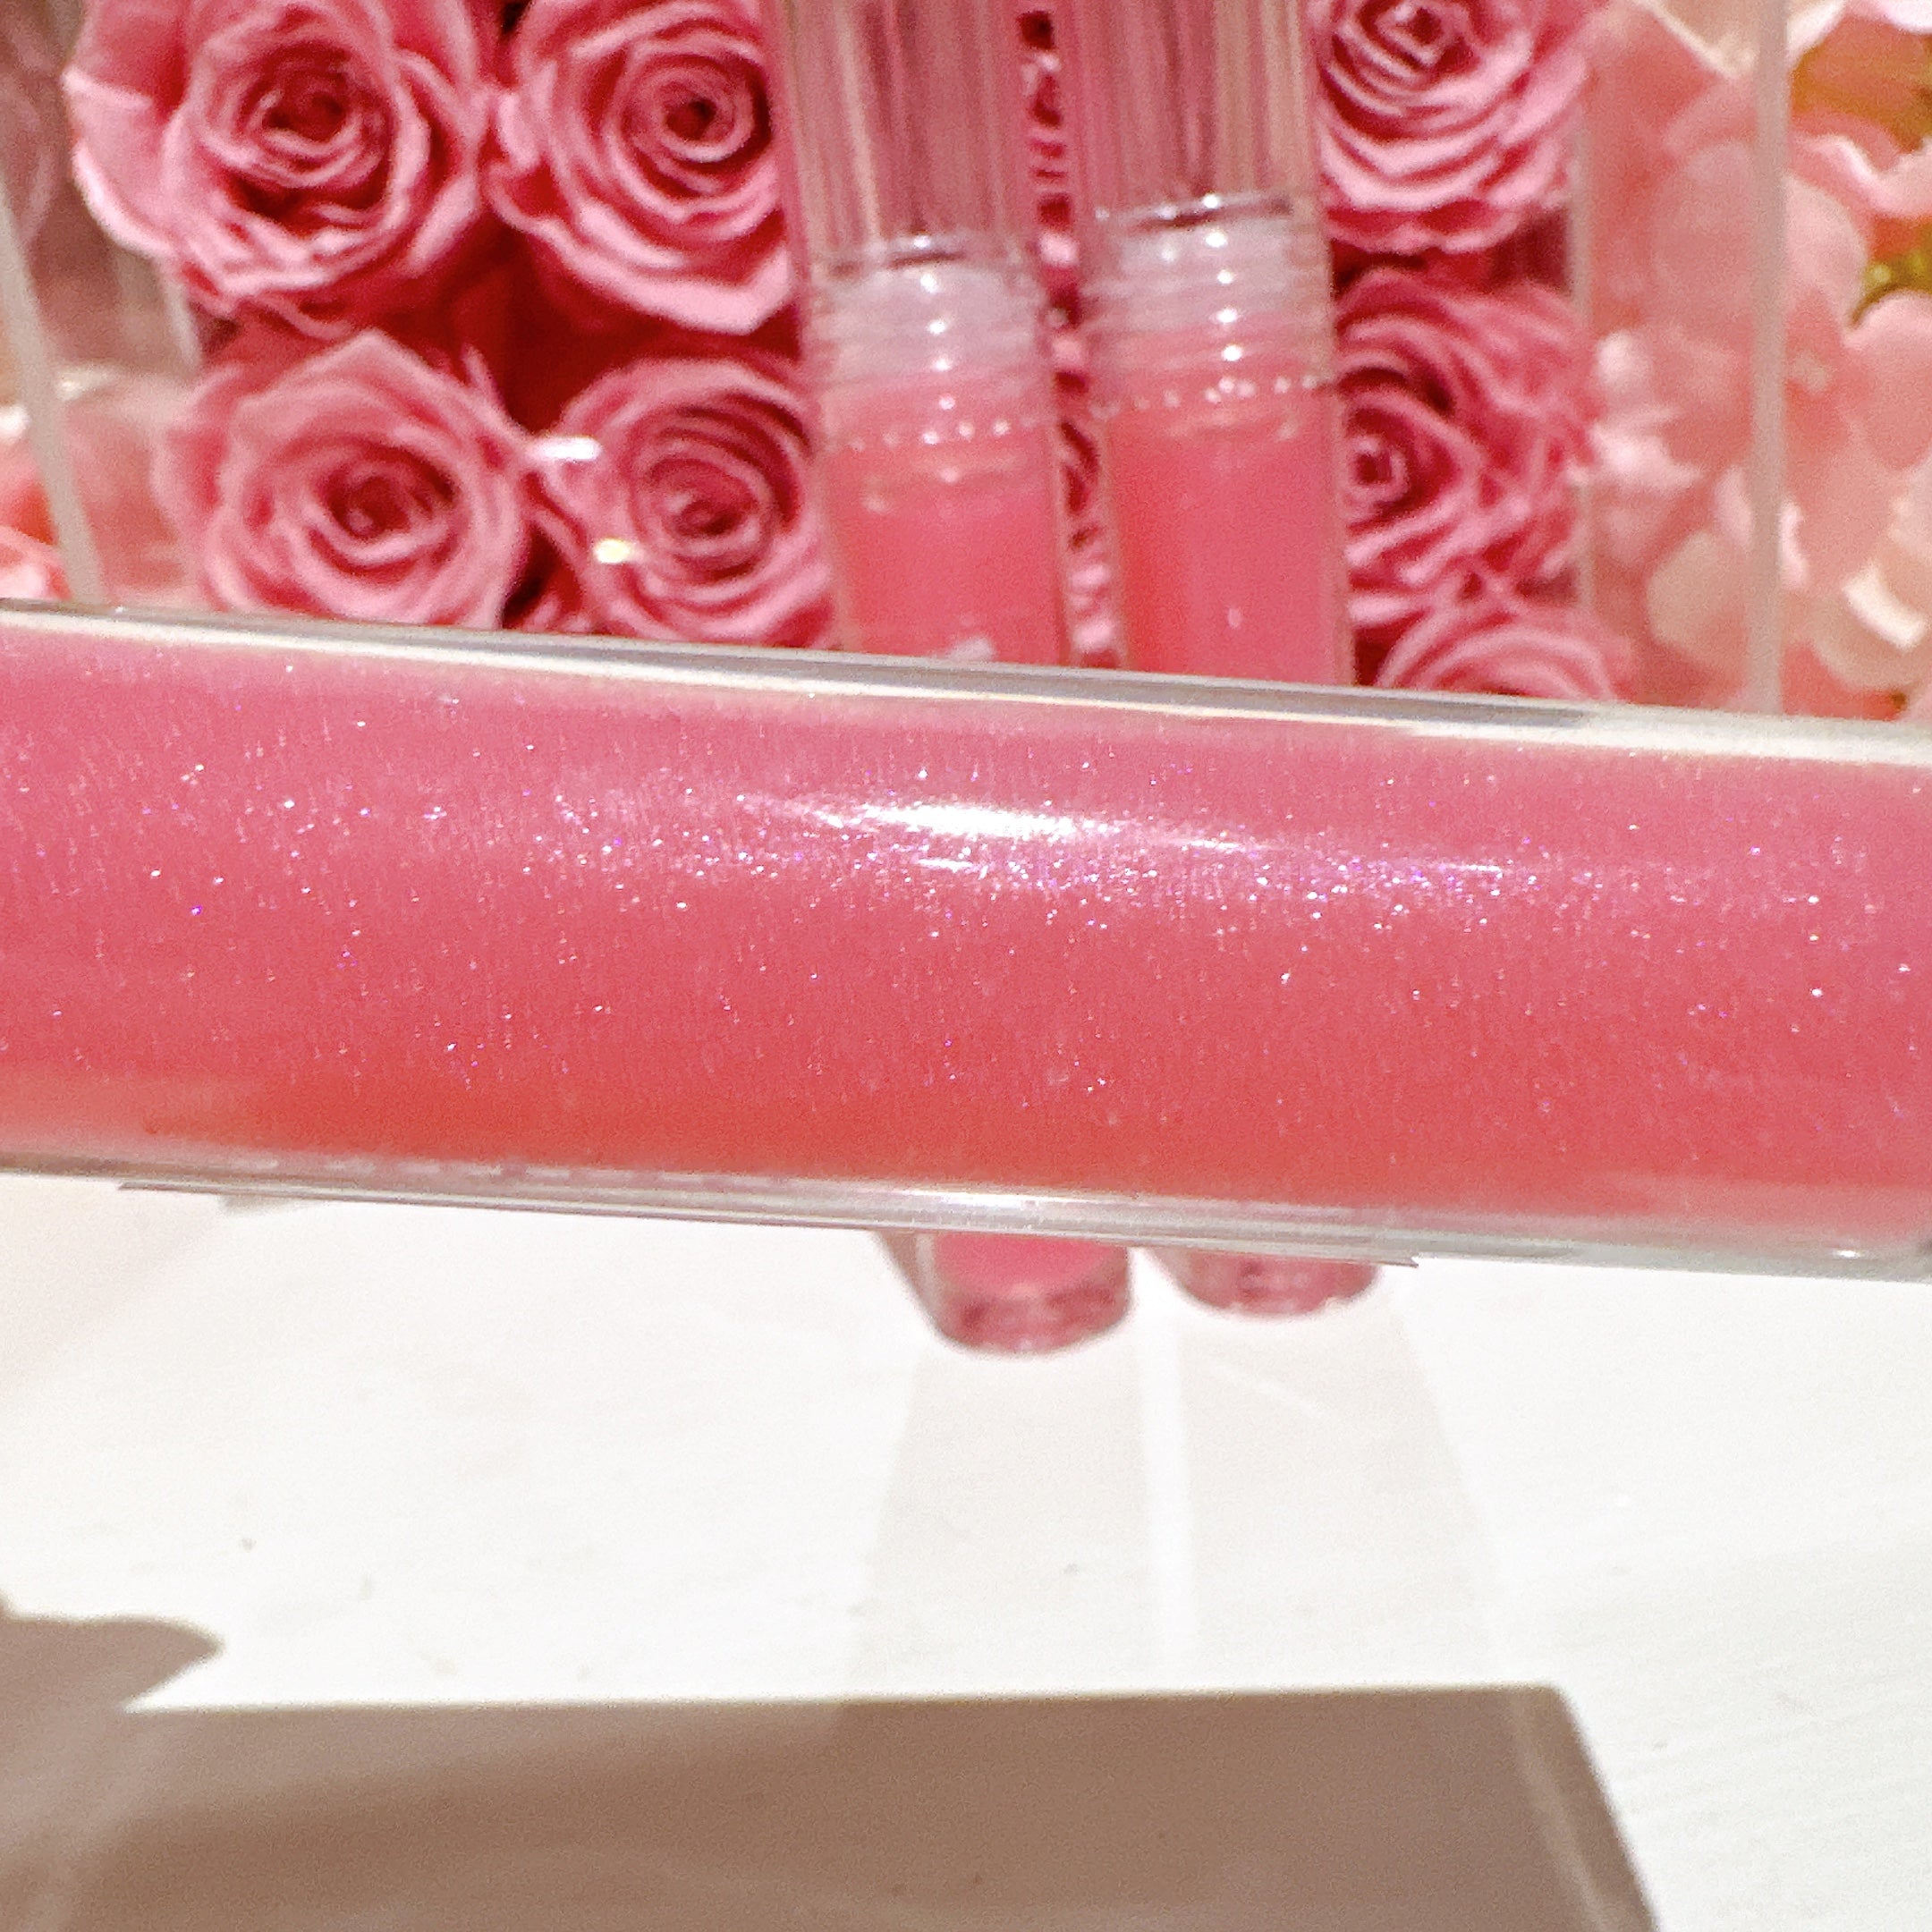 Princess pink lipgloss, pink glitter strawberry scented lipgloss, high shine lipgloss